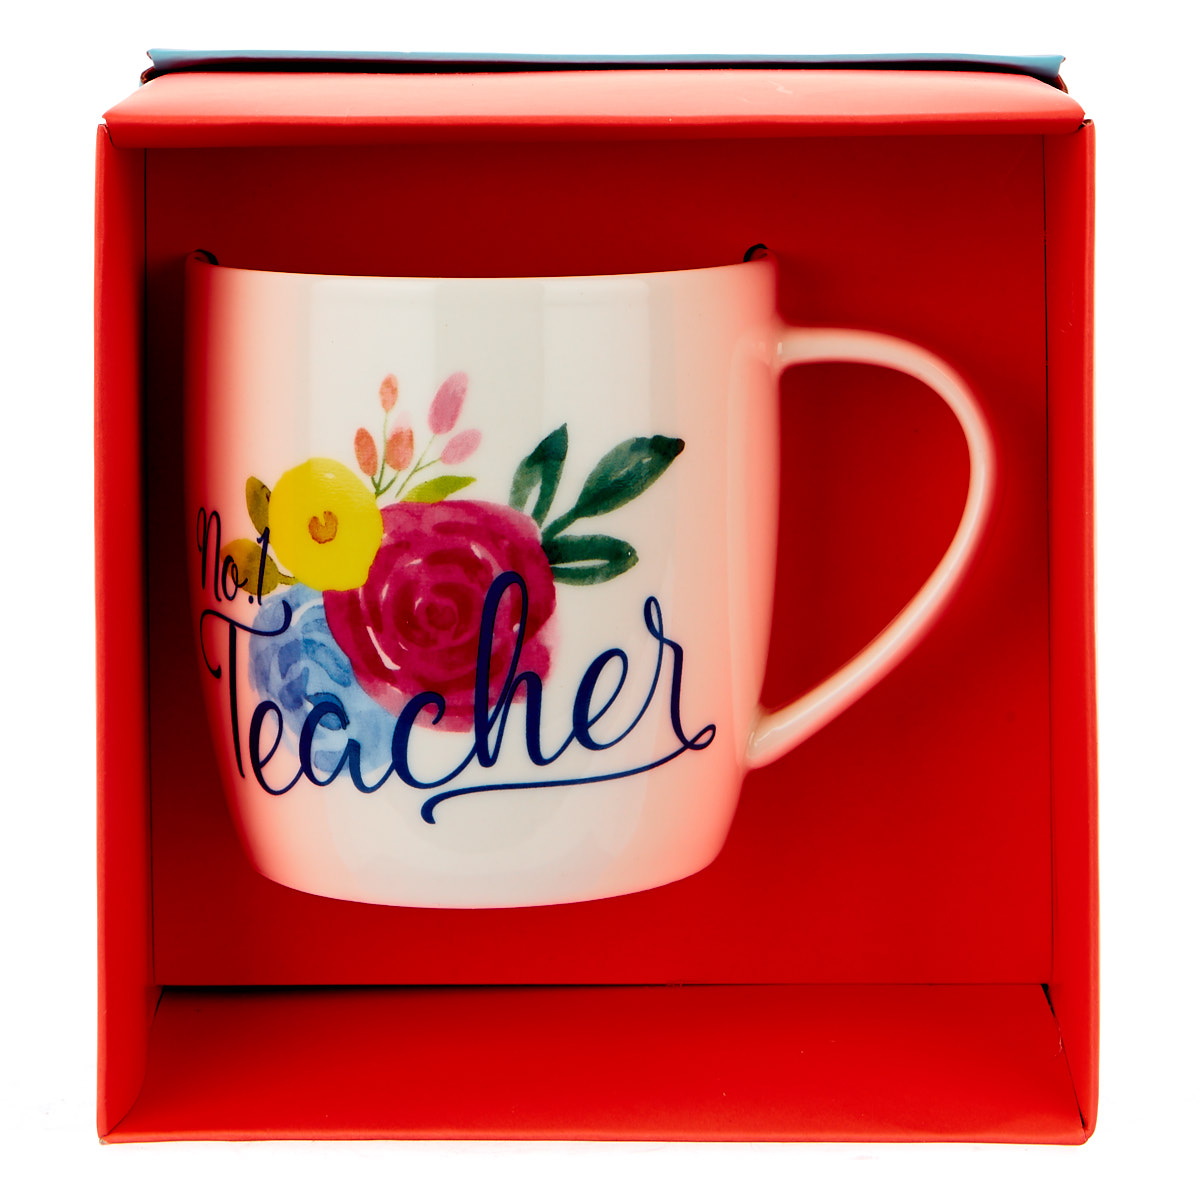 No.1 Teacher Floral Mug In A Box